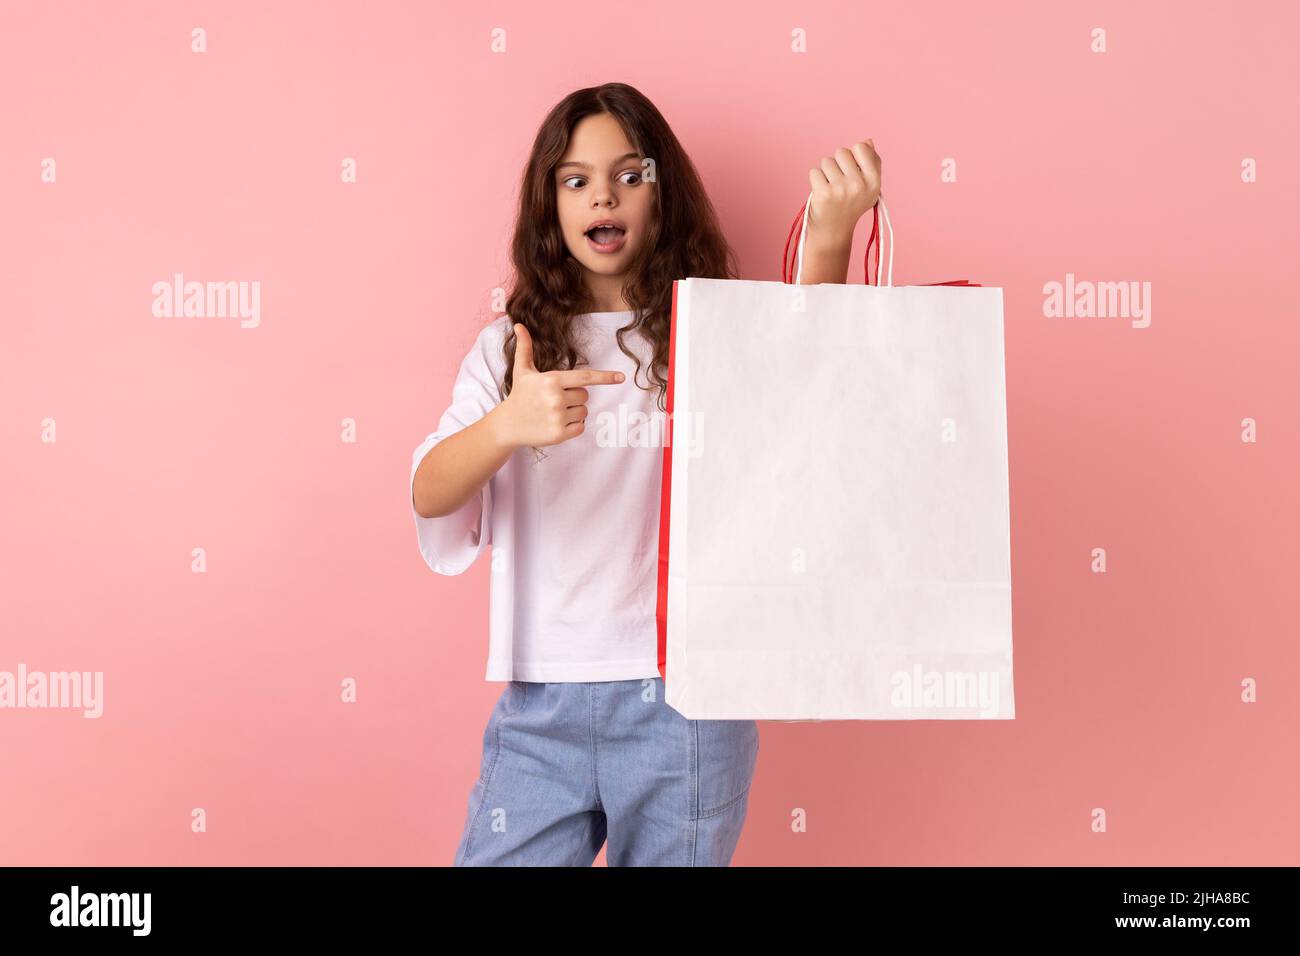 Ritratto della bambina scioccata che indossa una T-shirt bianca che punta alle borse per lo shopping, guardando la macchina fotografica con un'espressione del viso sorprendente. Studio interno girato isolato su sfondo rosa. Foto Stock